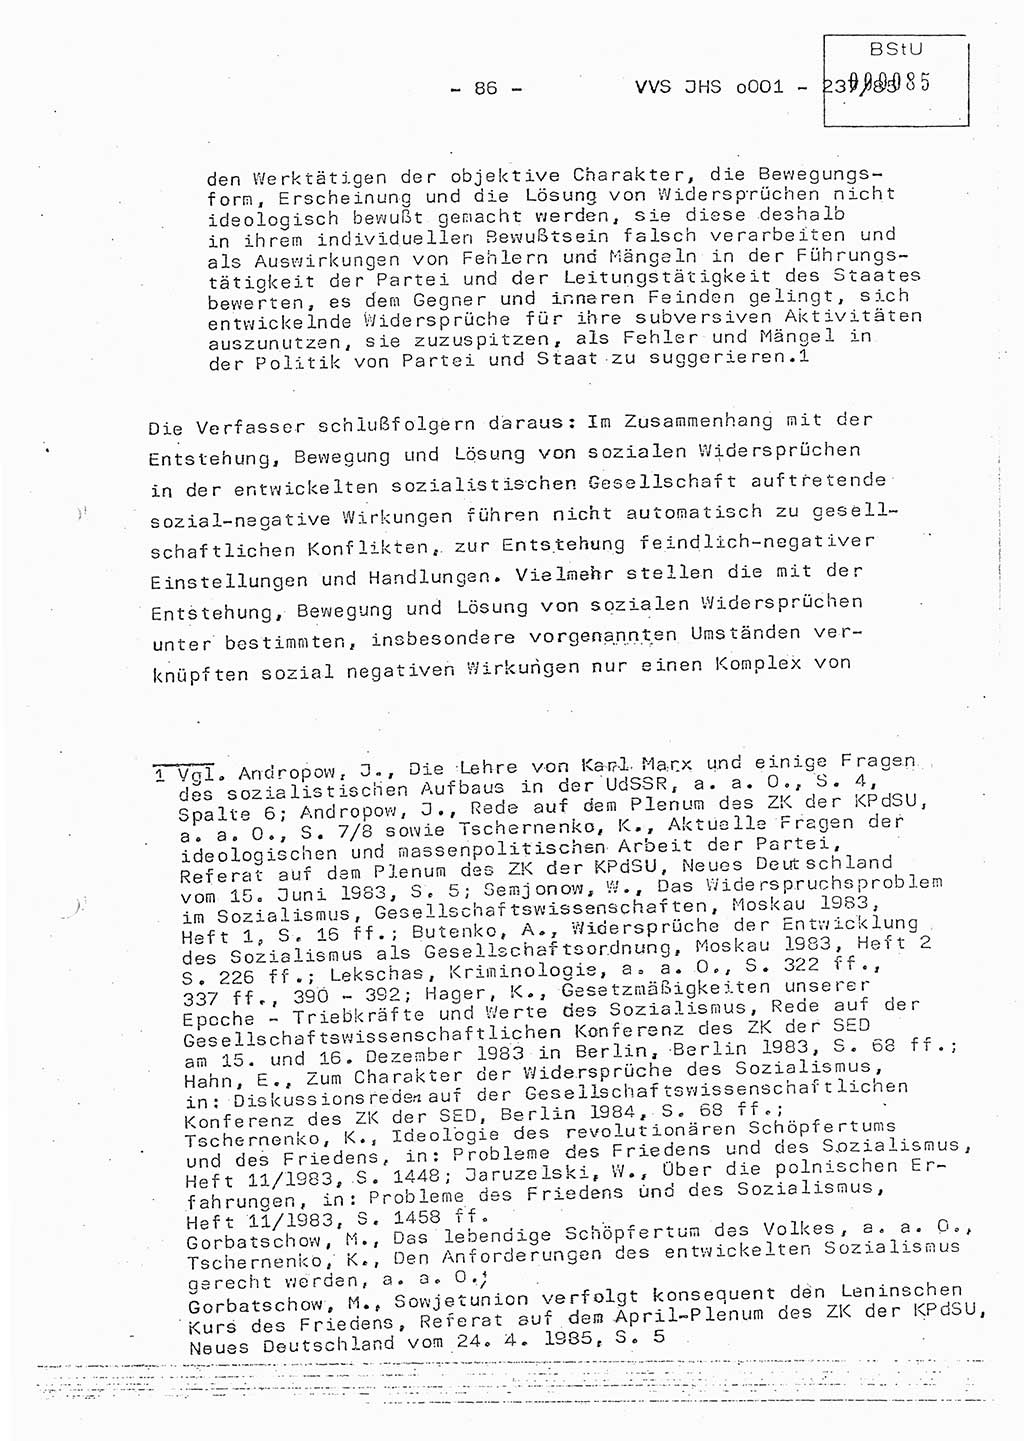 Dissertation Oberstleutnant Peter Jakulski (JHS), Oberstleutnat Christian Rudolph (HA Ⅸ), Major Horst Böttger (ZMD), Major Wolfgang Grüneberg (JHS), Major Albert Meutsch (JHS), Ministerium für Staatssicherheit (MfS) [Deutsche Demokratische Republik (DDR)], Juristische Hochschule (JHS), Vertrauliche Verschlußsache (VVS) o001-237/85, Potsdam 1985, Seite 86 (Diss. MfS DDR JHS VVS o001-237/85 1985, S. 86)